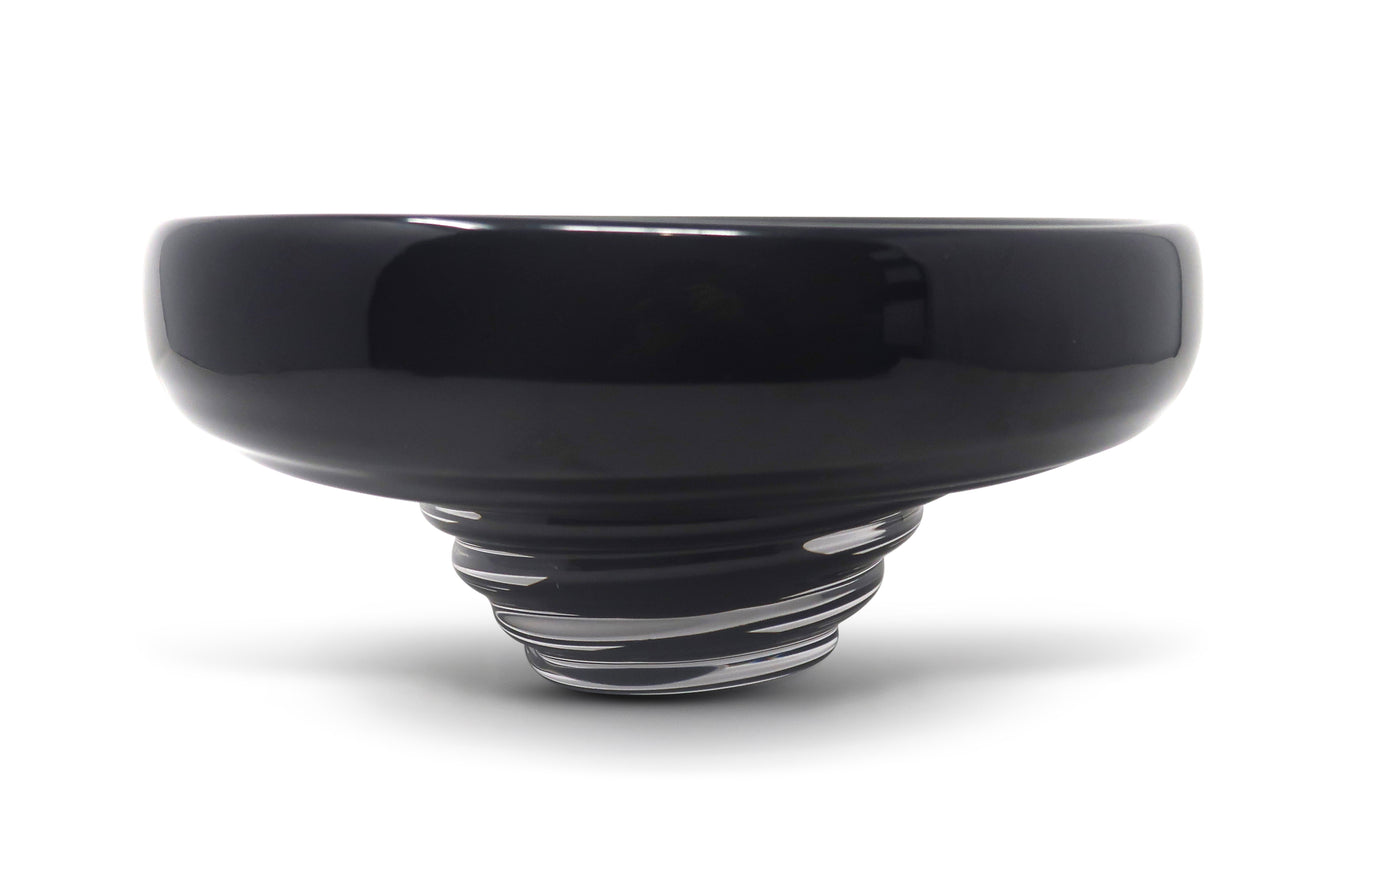 Glass Centerpiece Bowl, 10.75"D